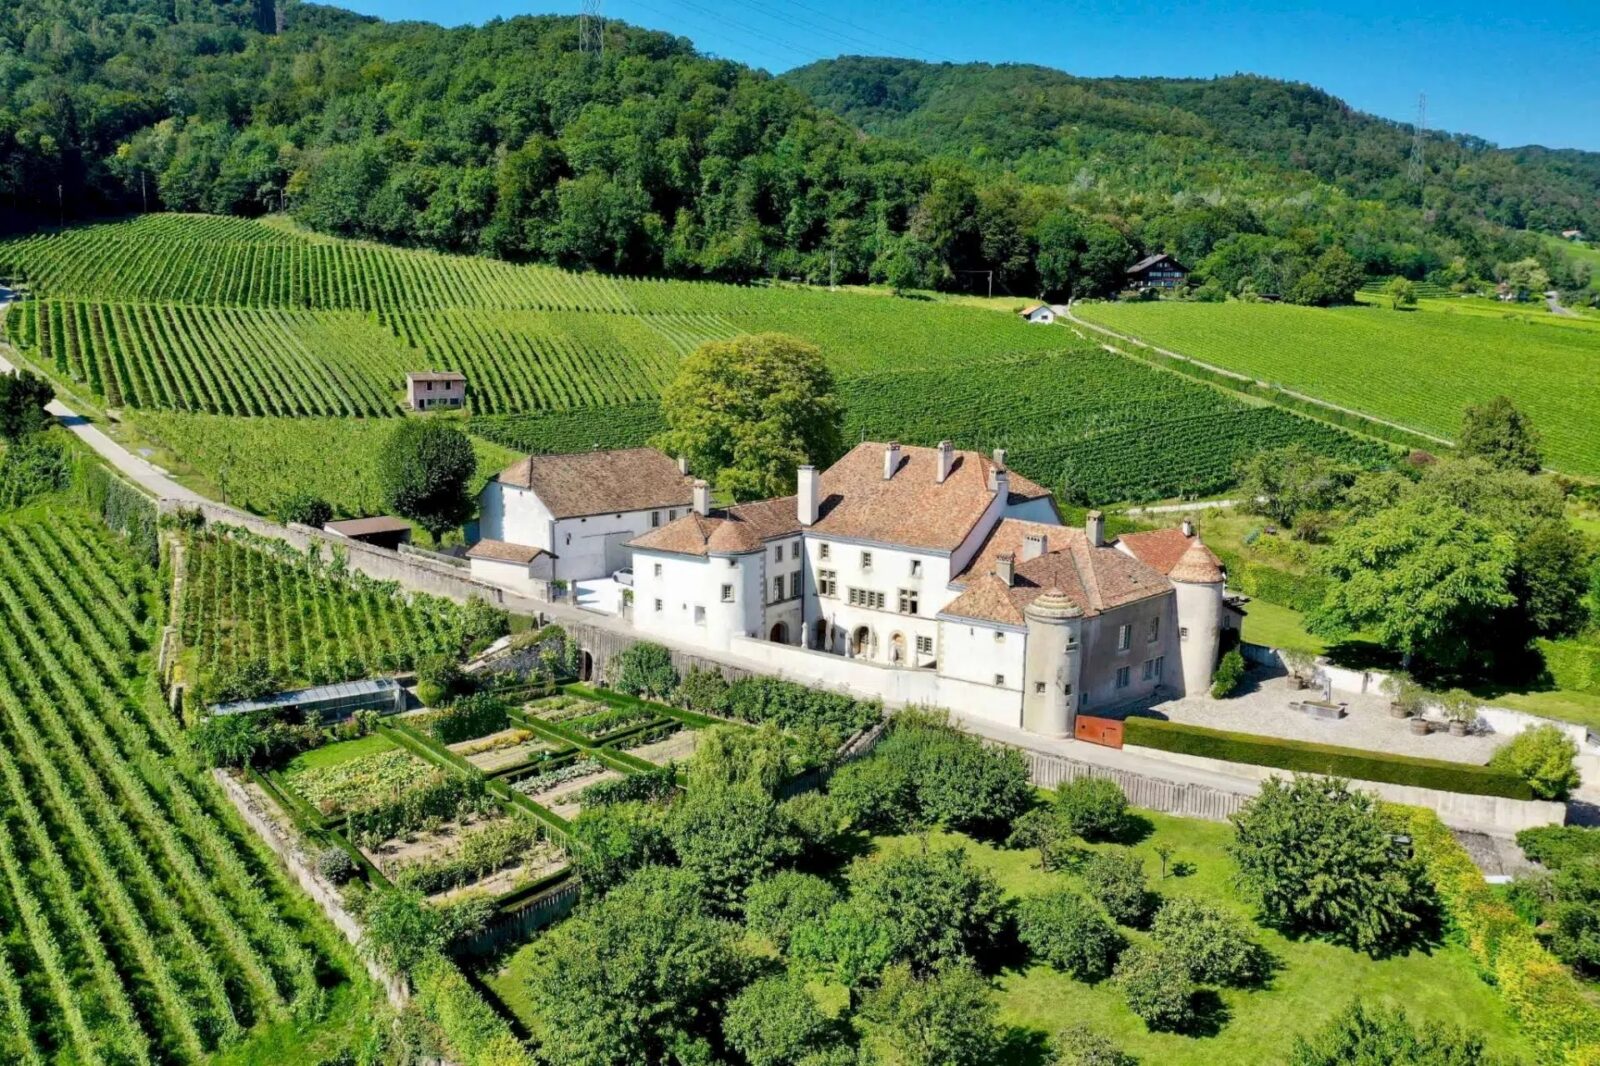 Chateau Le Rosey 13th Century Castle Bursins Vaud Switzerland